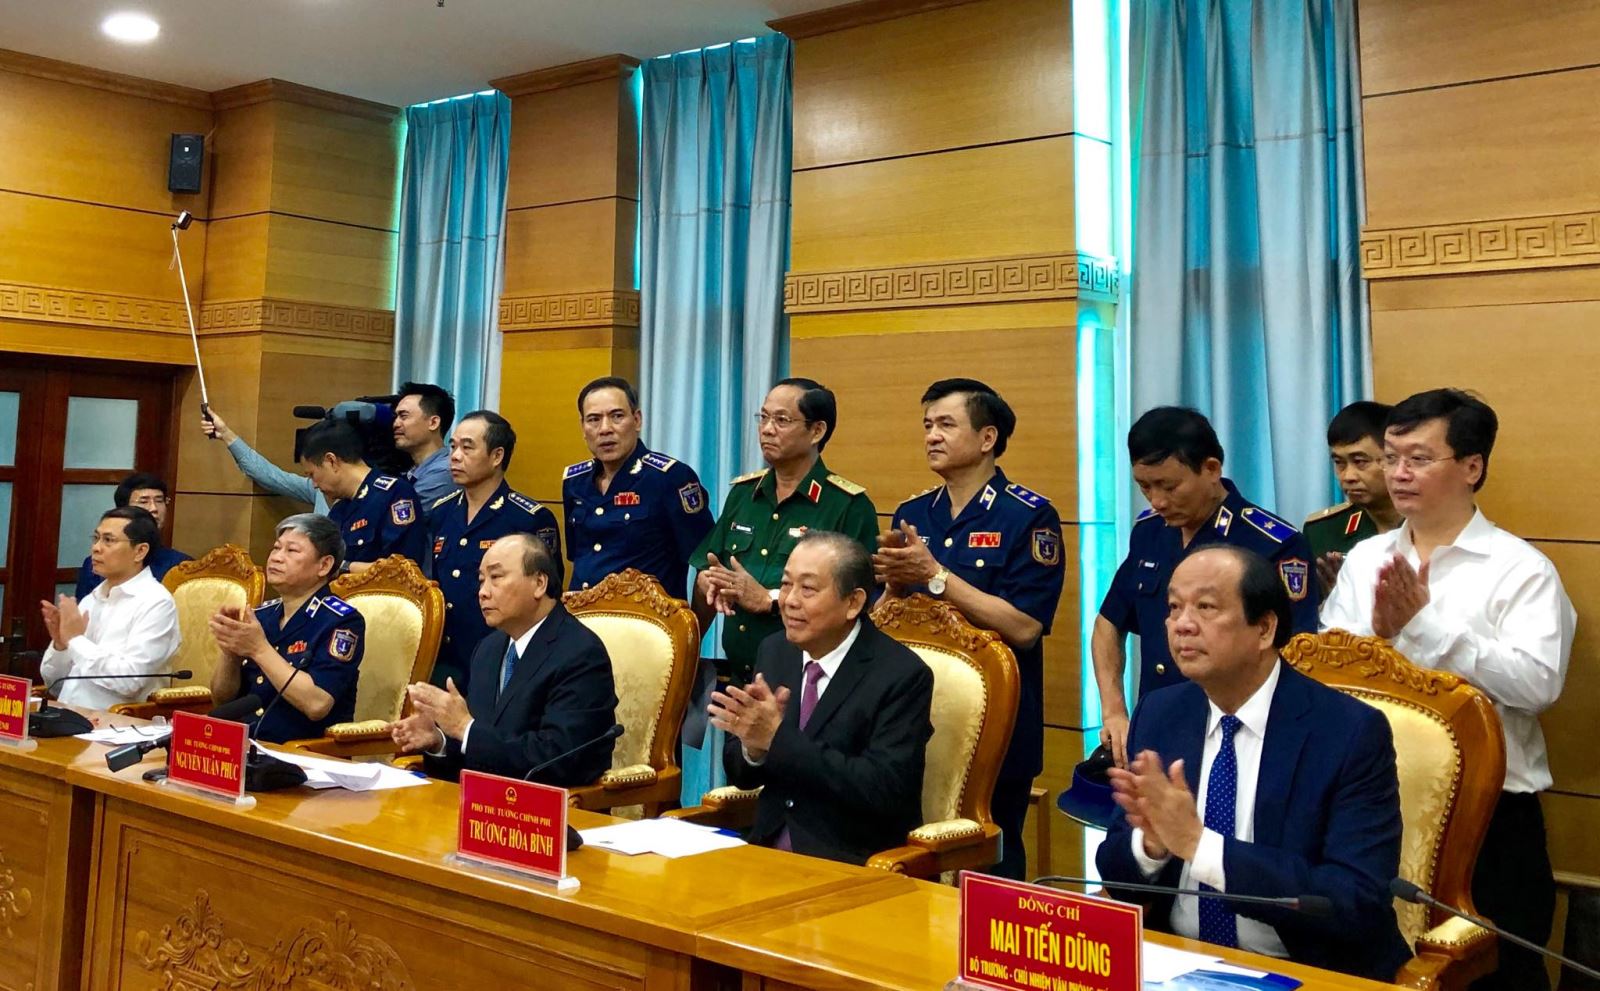 Thủ tướng trò chuyện với cán bộ, chiến sĩ Cảnh sát biển Việt Nam đang làm nhiệm vụ trên biển thông qua truyền hình trực tuyến tại Phòng điều hành Trung tâm Chỉ huy, Bộ Tư lệnh Cảnh sát biển Việt Nam.